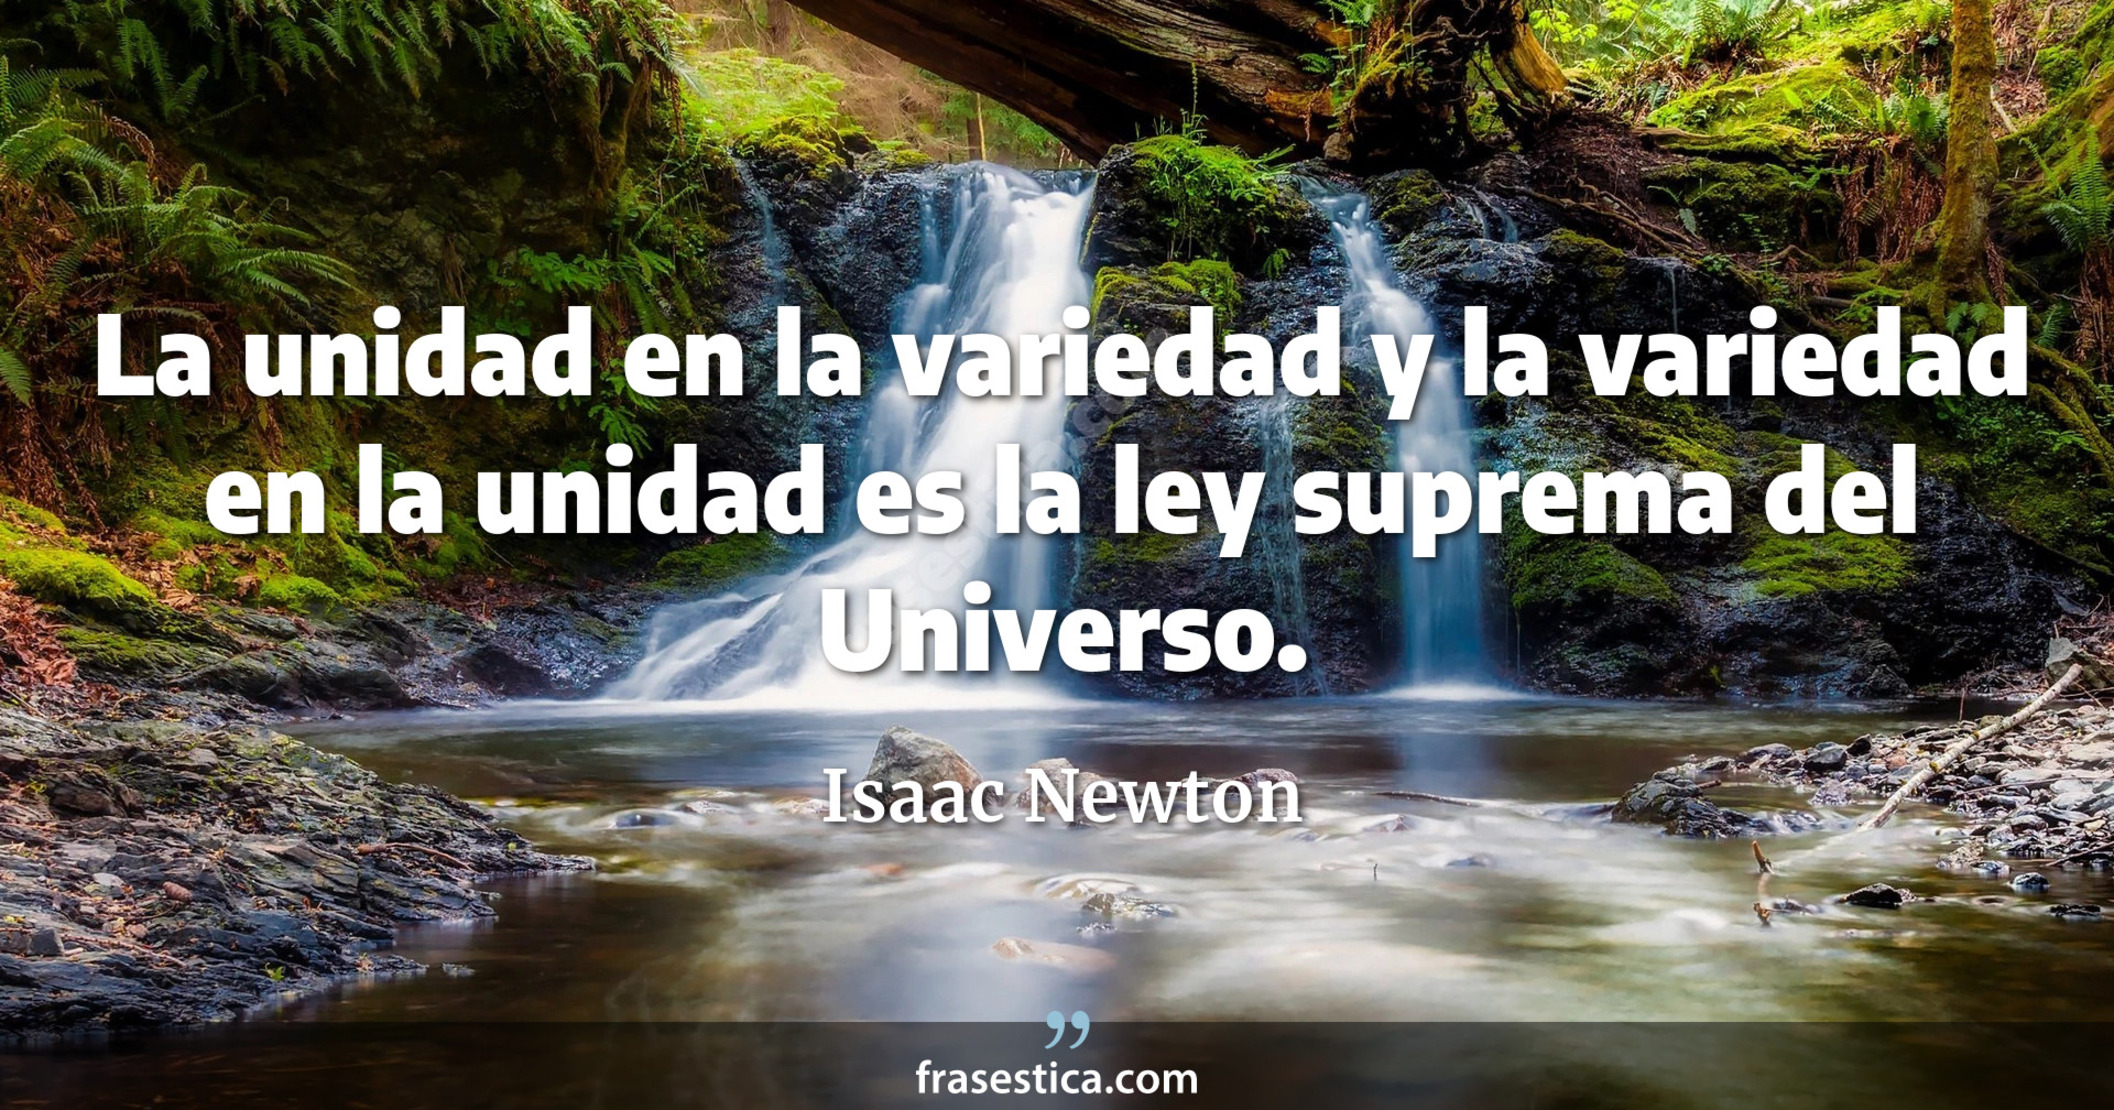 La unidad en la variedad y la variedad en la unidad es la ley suprema del Universo. - Isaac Newton